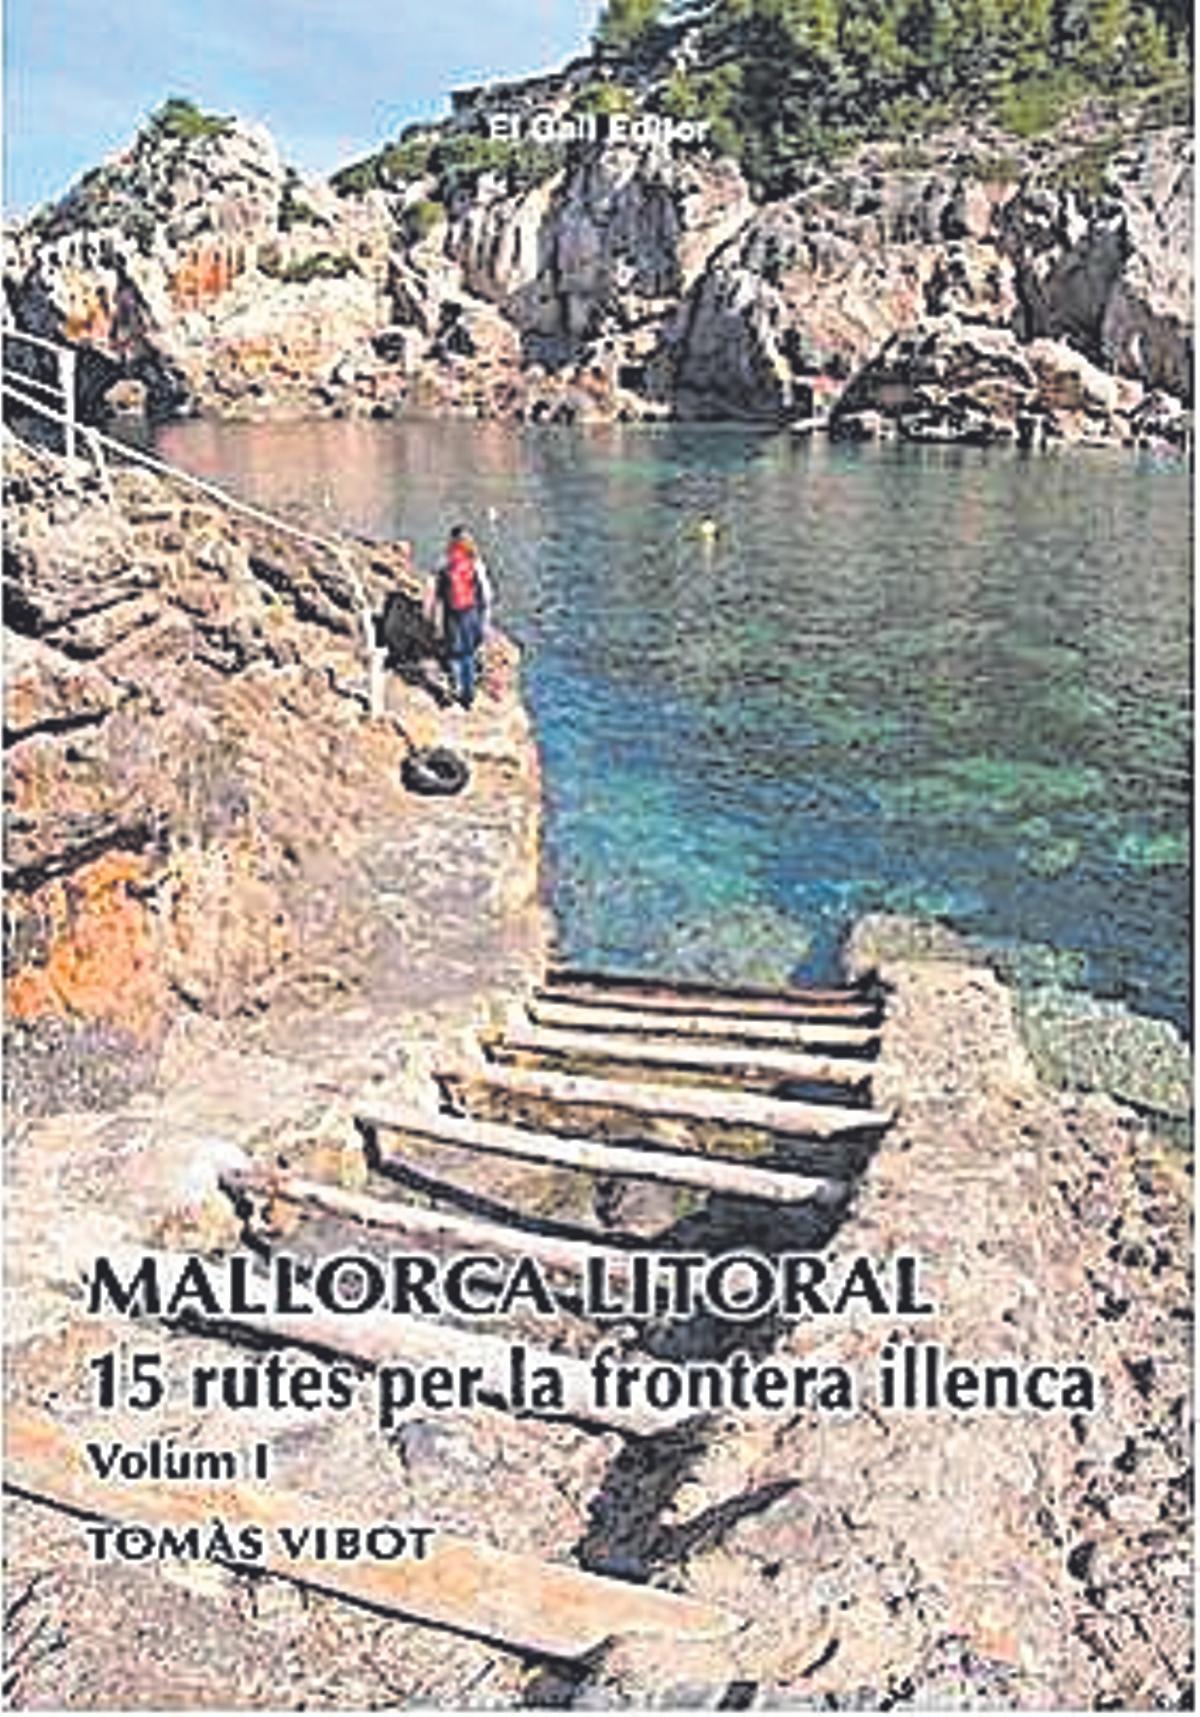 Portada del llibre: Mallorca litoral, de Tomàs Vibot. Editorial: El Gall. 15  euros.